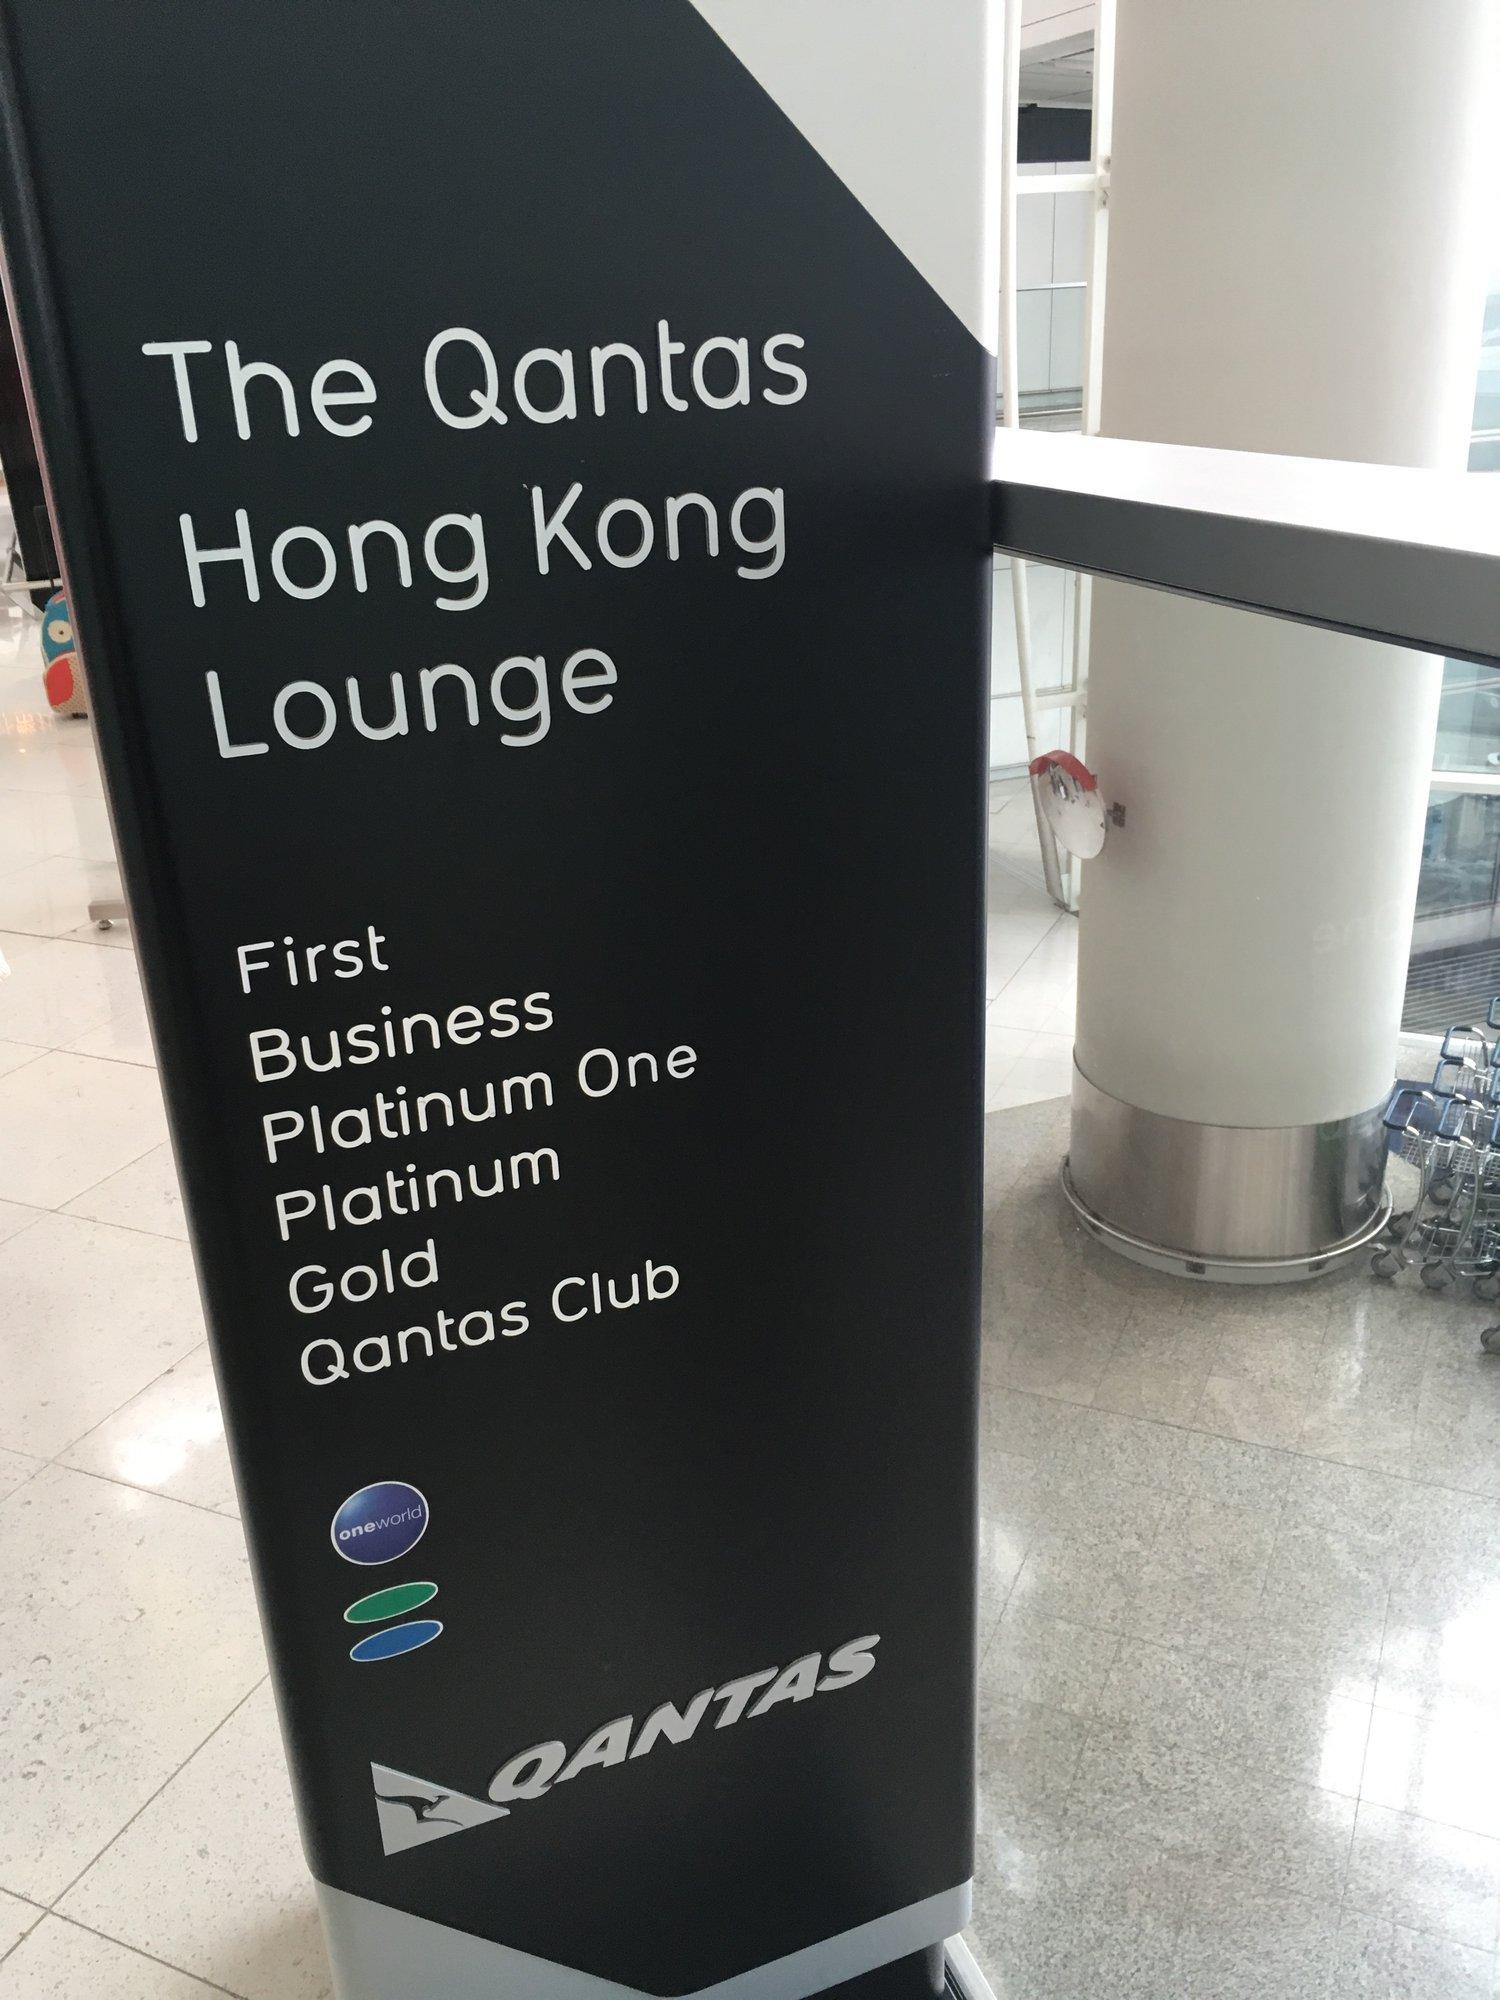 The Qantas Hong Kong Lounge image 66 of 99